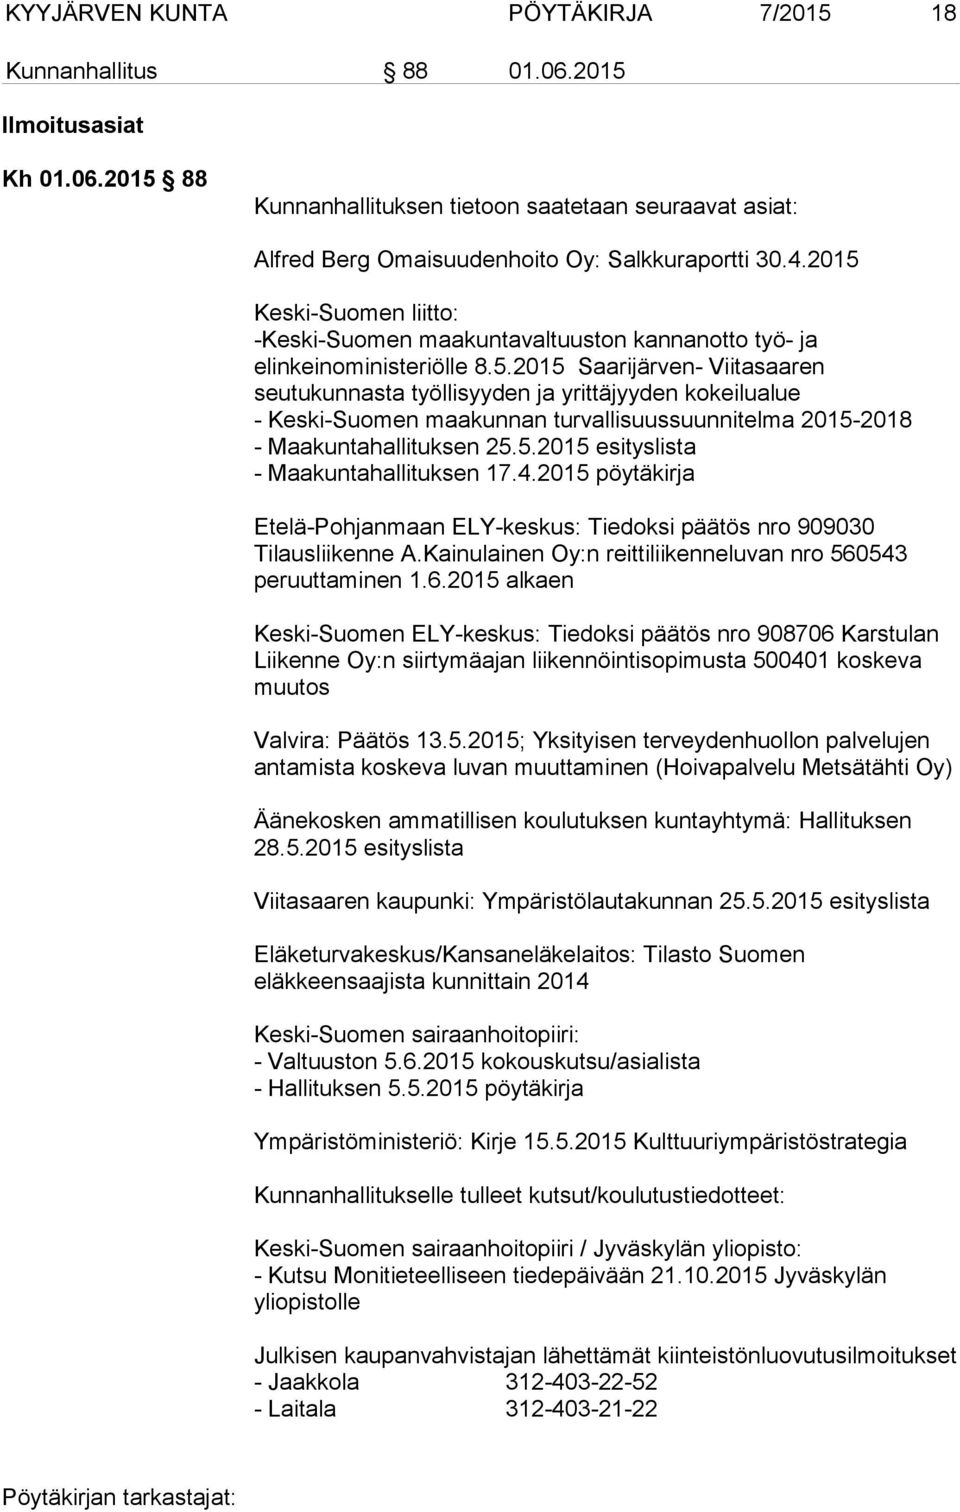 5.2015 esityslista - Maakuntahallituksen 17.4.2015 pöytäkirja Etelä-Pohjanmaan ELY-keskus: Tiedoksi päätös nro 909030 Tilausliikenne A.Kainulainen Oy:n reittiliikenneluvan nro 560543 peruuttaminen 1.